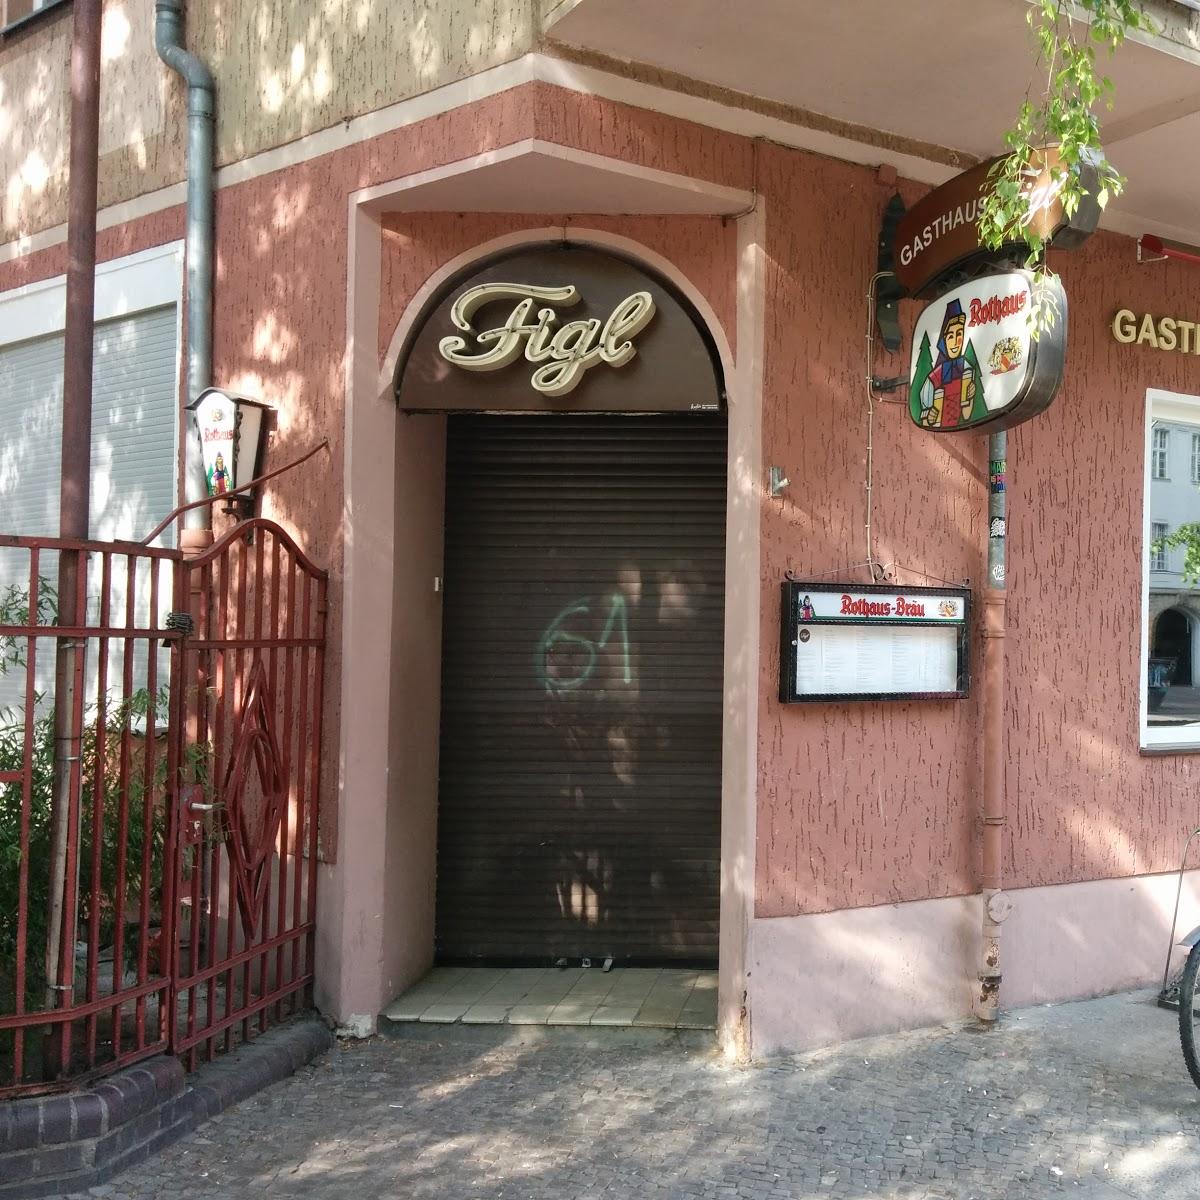 Restaurant "Gasthaus Figl" in Berlin